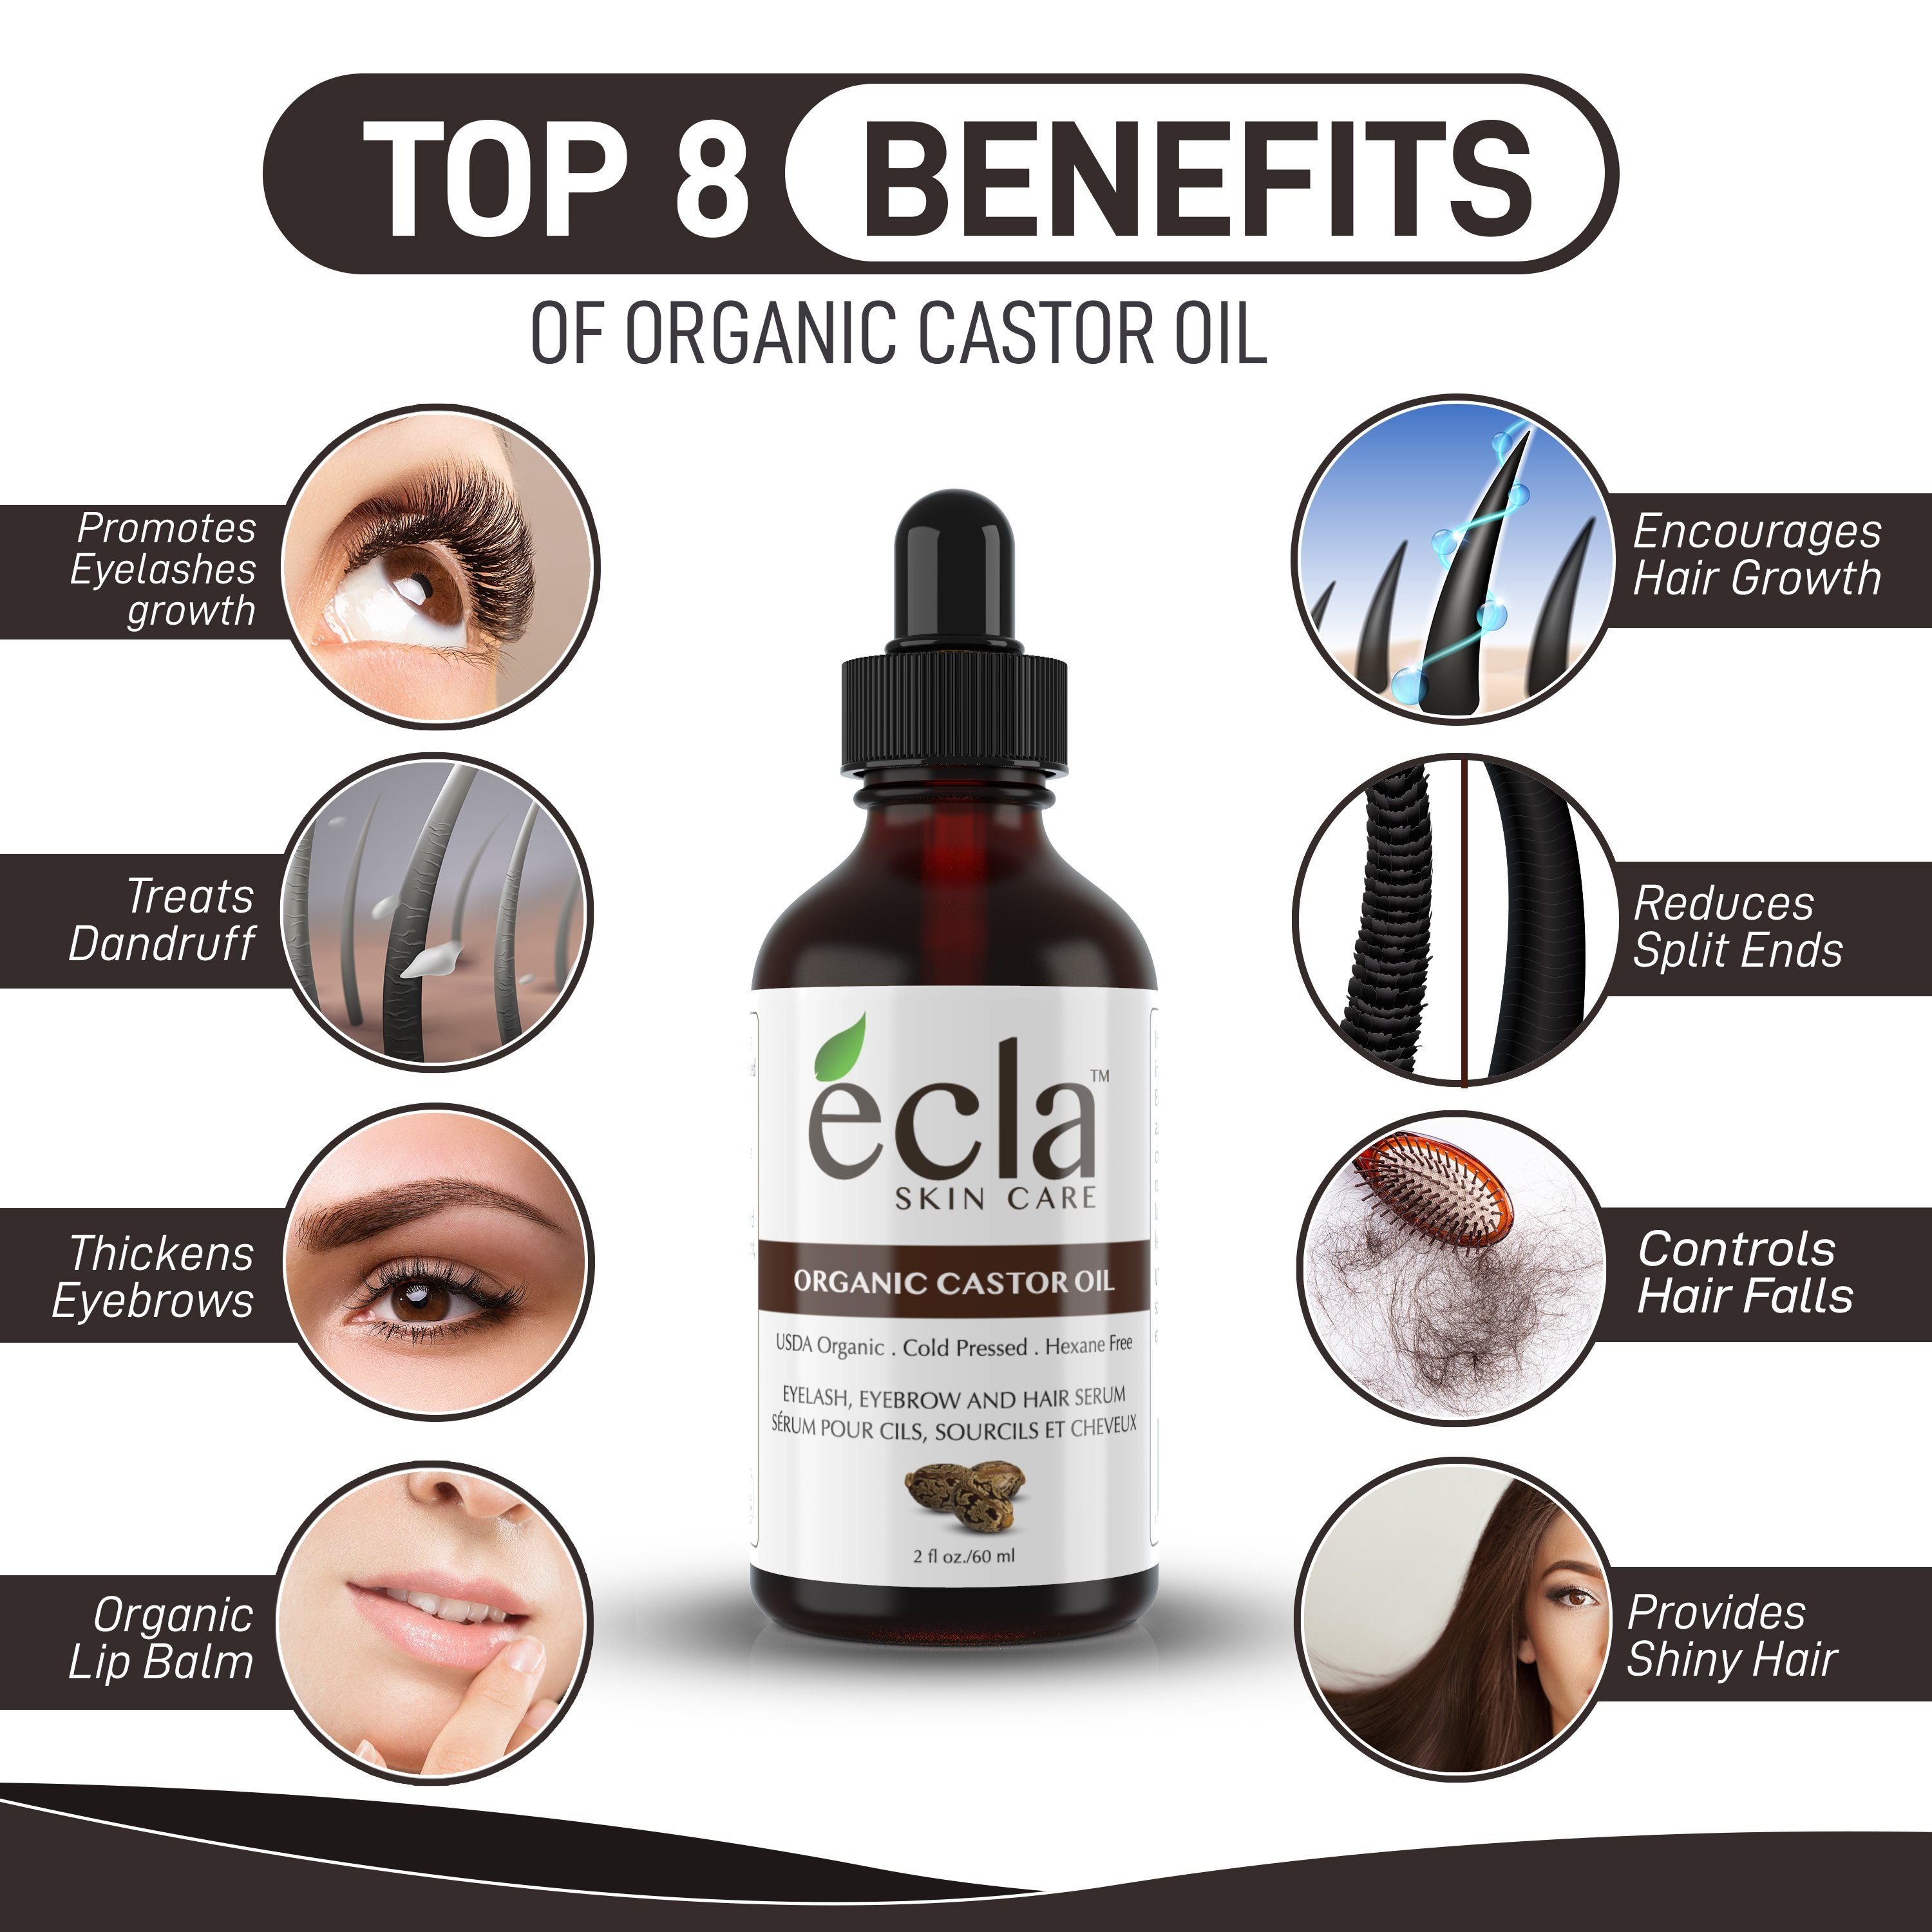 Top 8 Benefits of Organic Castor Oil